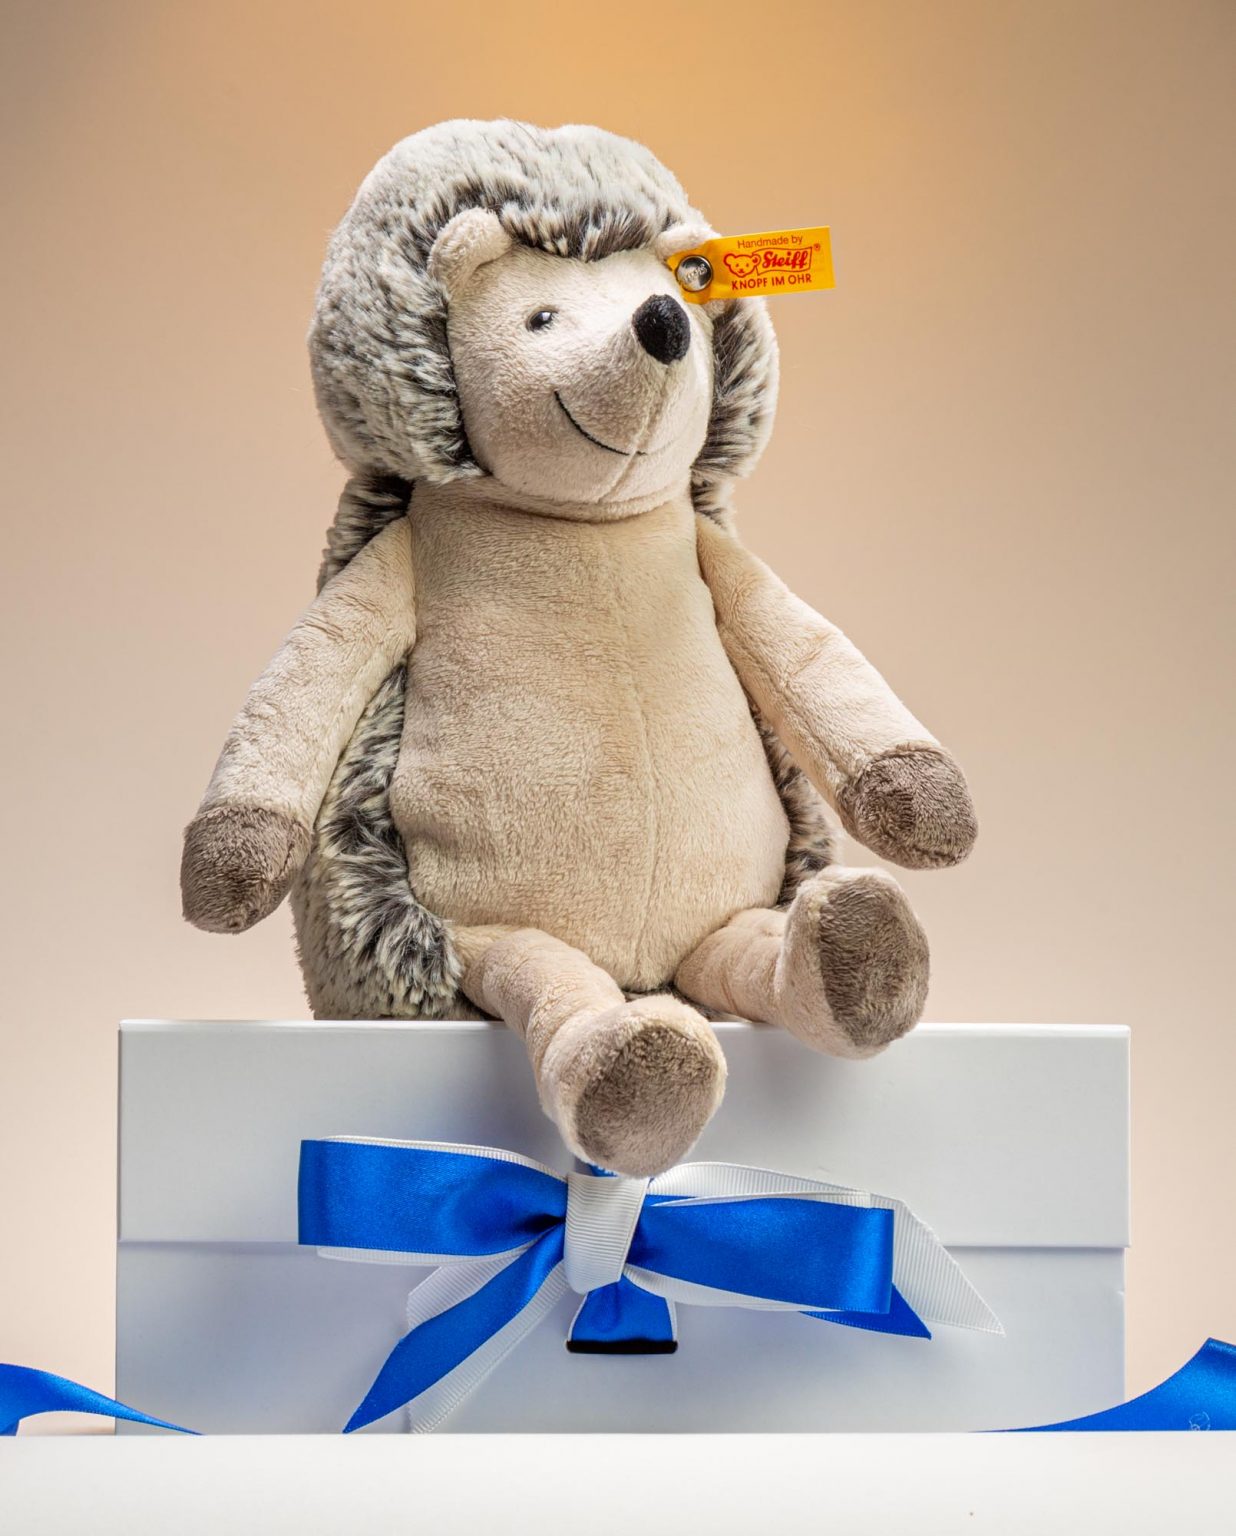 Steiff Hedgy Hedgehog Soft Toy Gift - Send A Cuddly